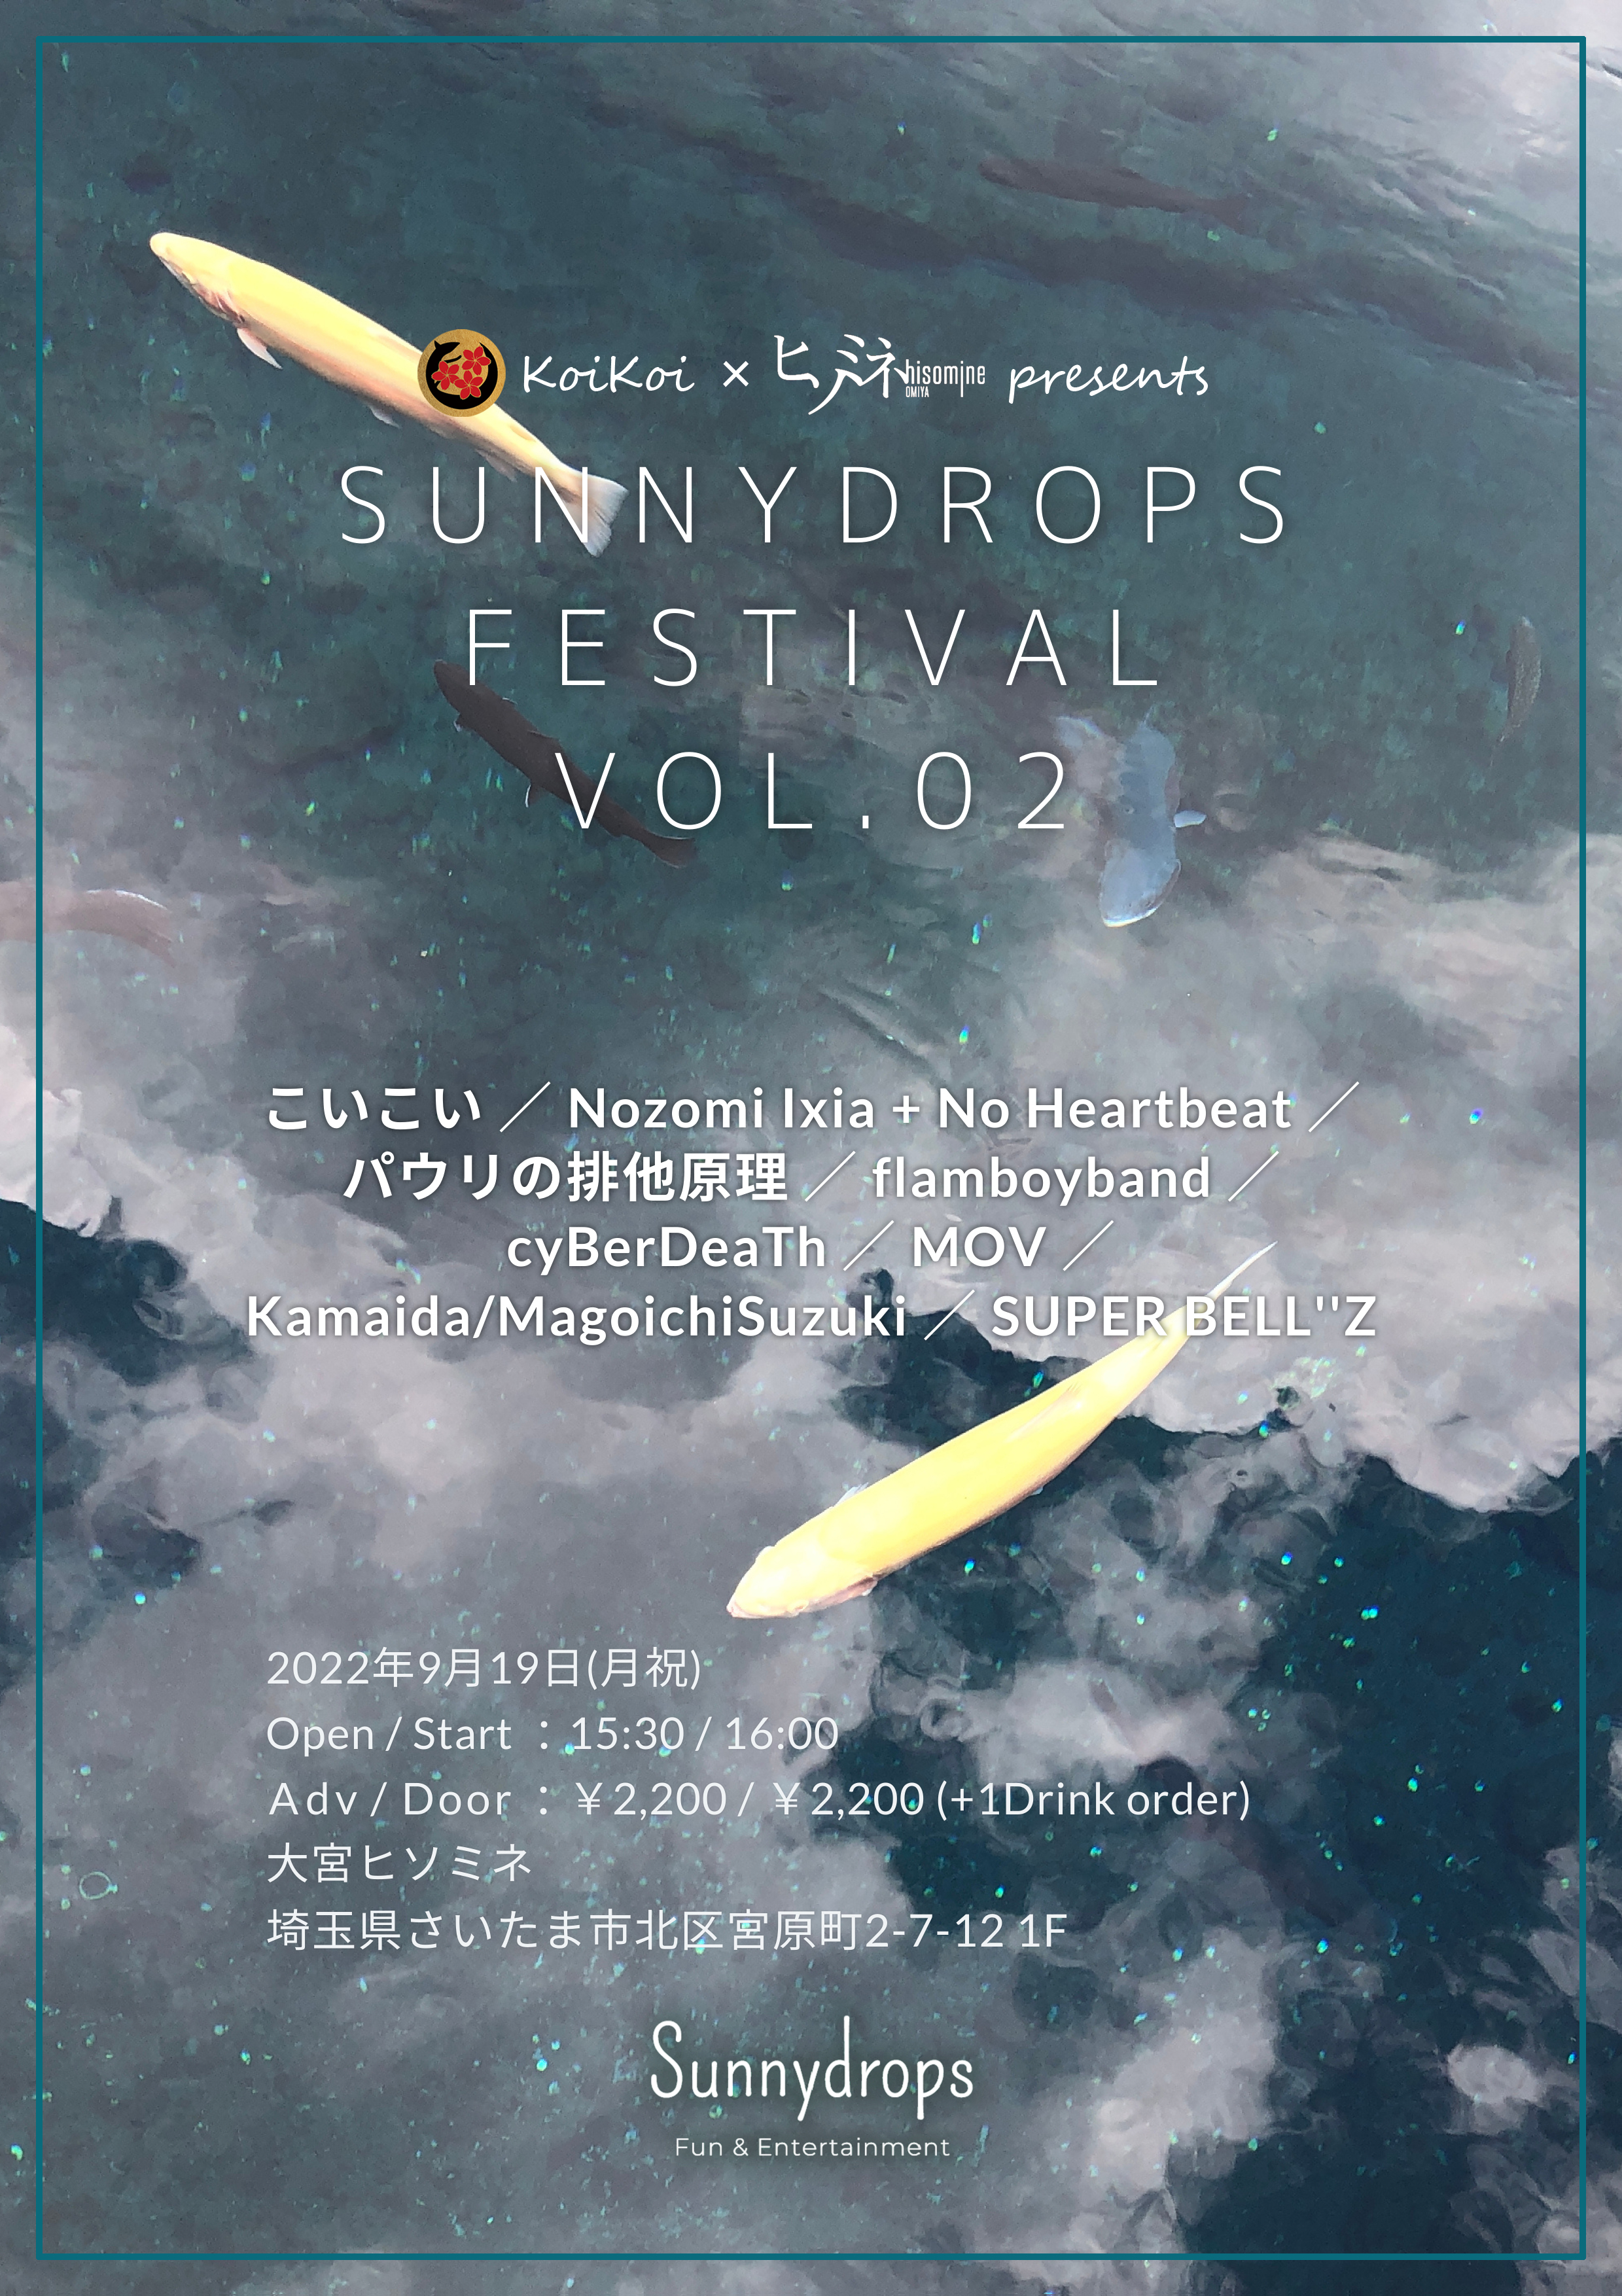 Sunnydrops Festival Vol.02